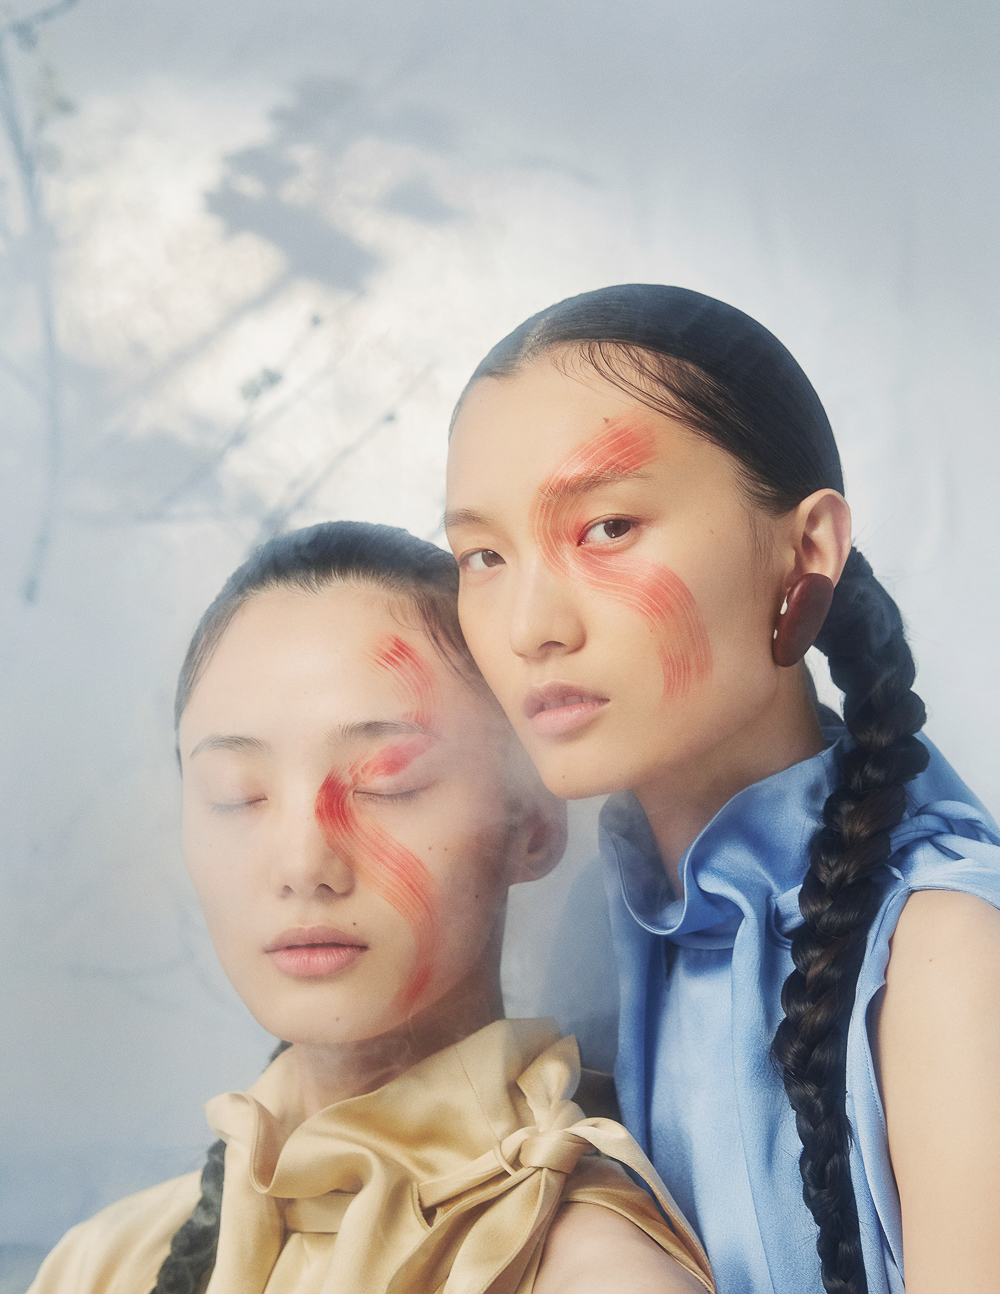 Ruo Bing Li for Harper’s Bazaar China with Chunjie Liu and Liu Huan